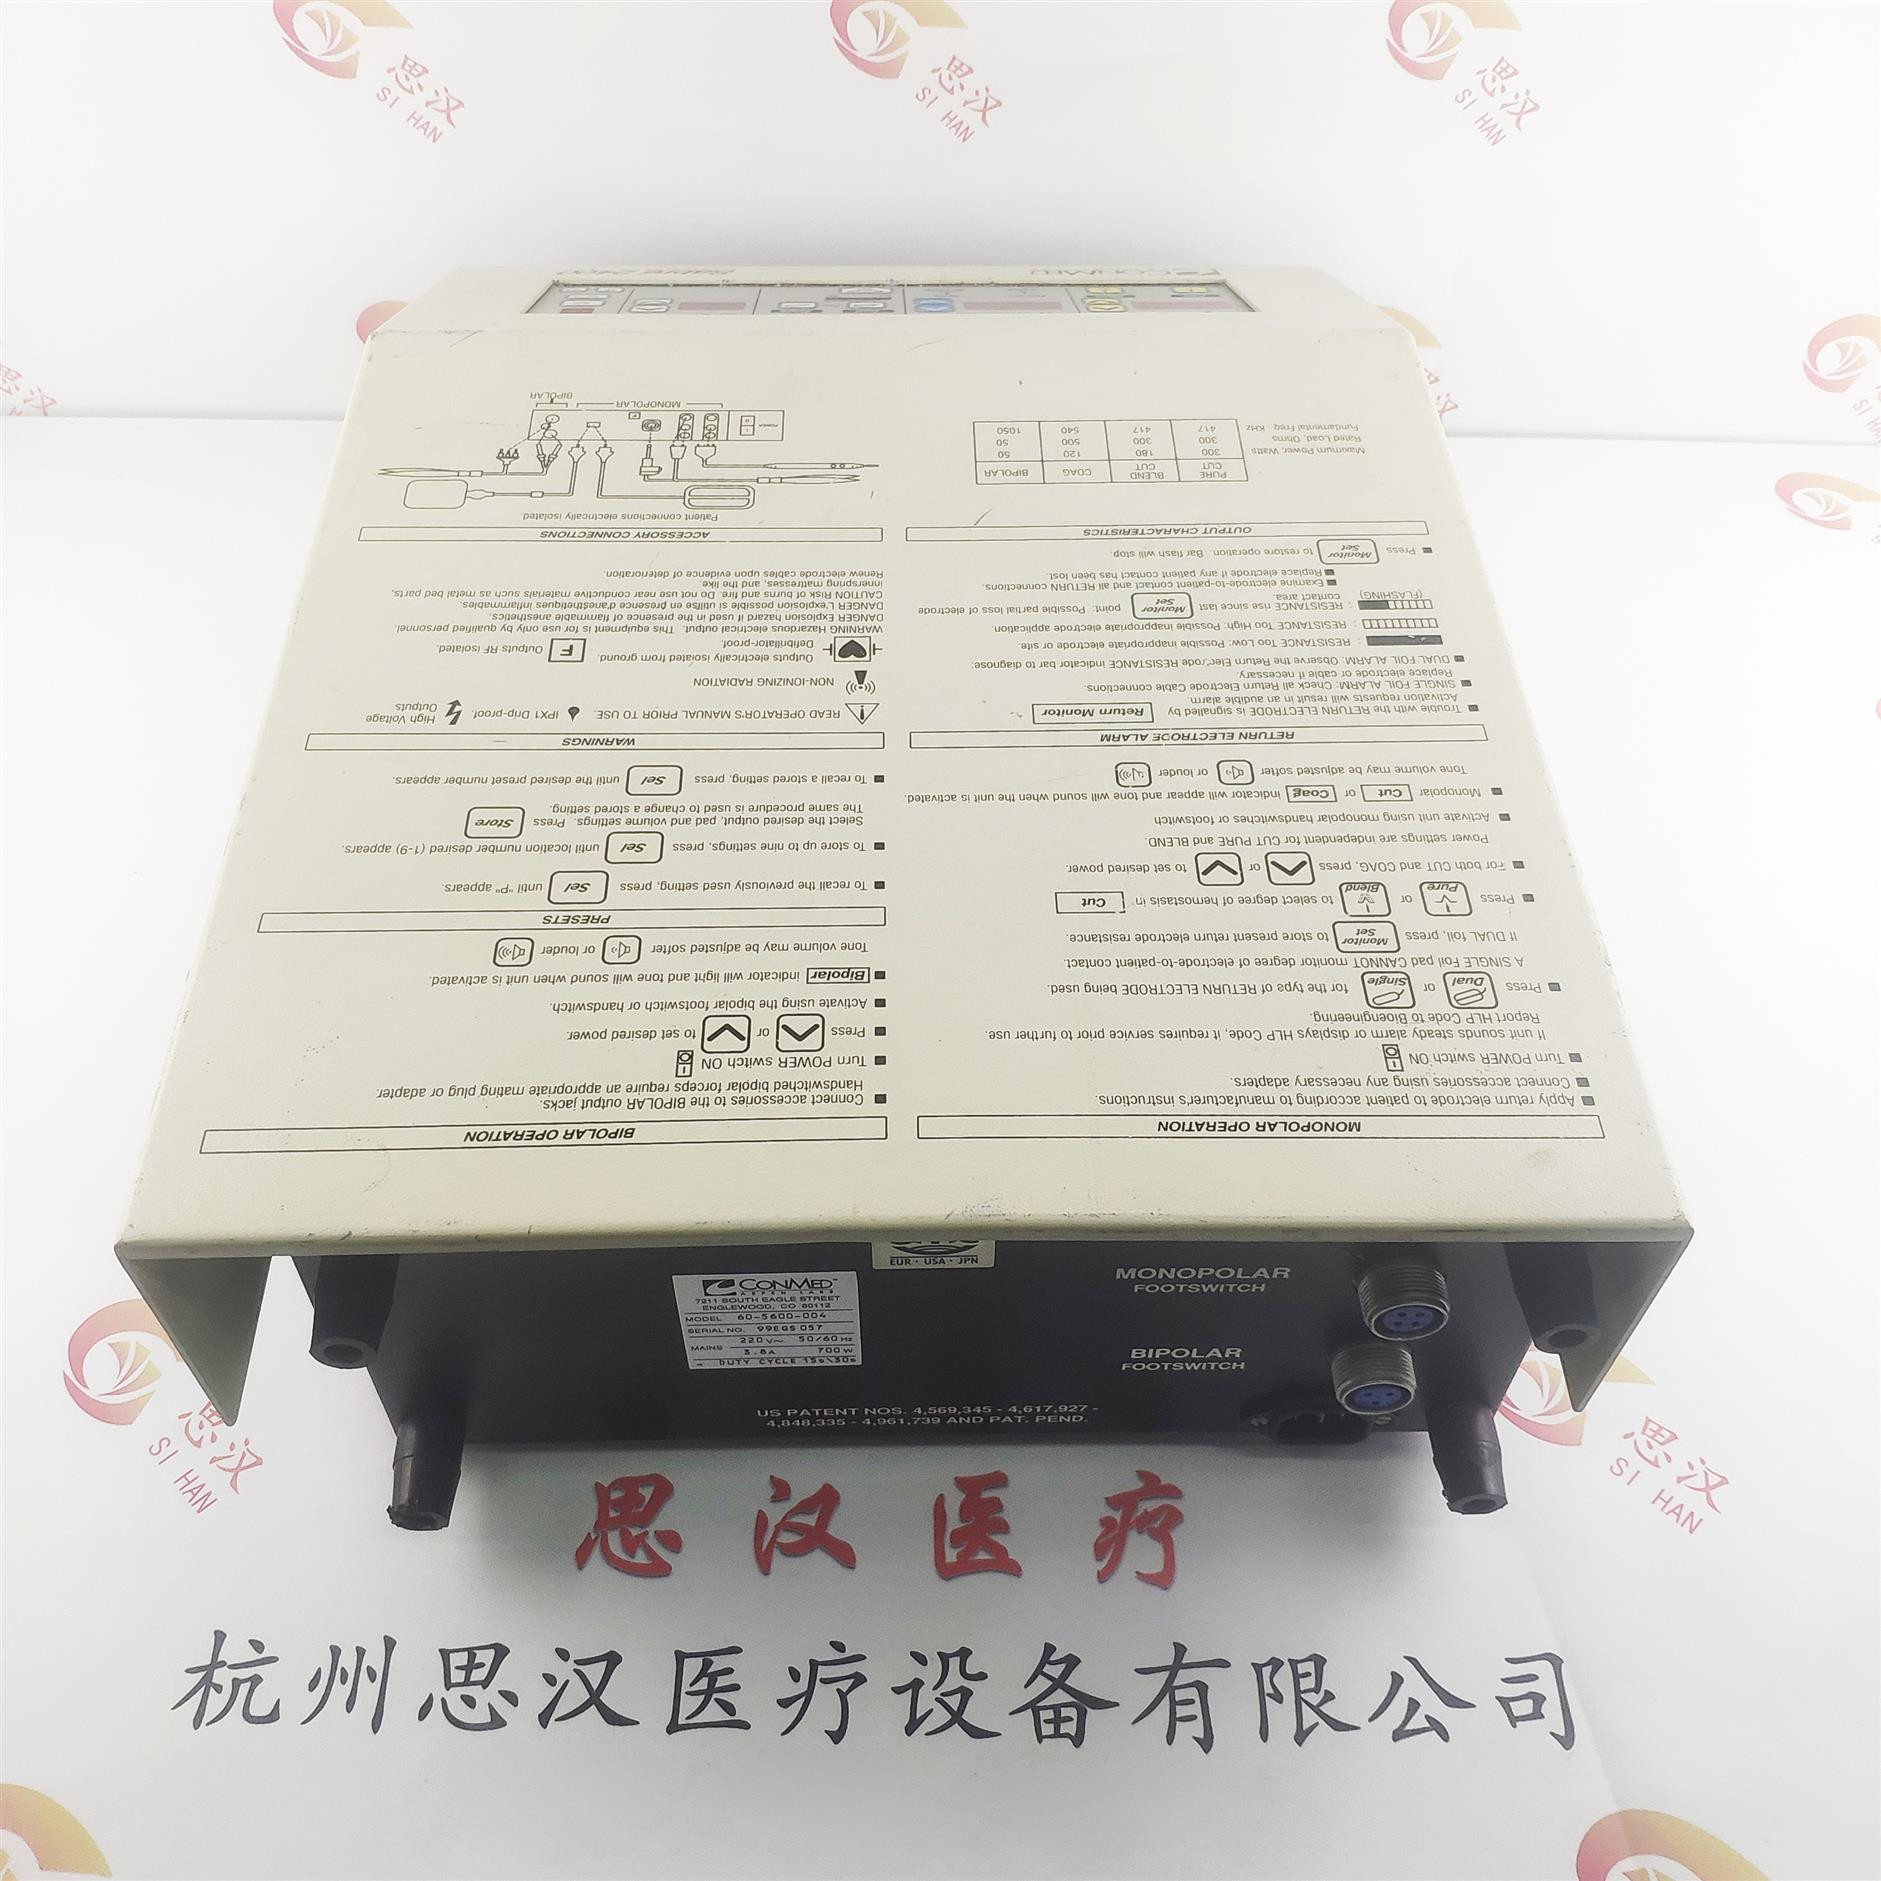 Sabre 2400控制板不兼容 杭州思汉医疗设备有限公司